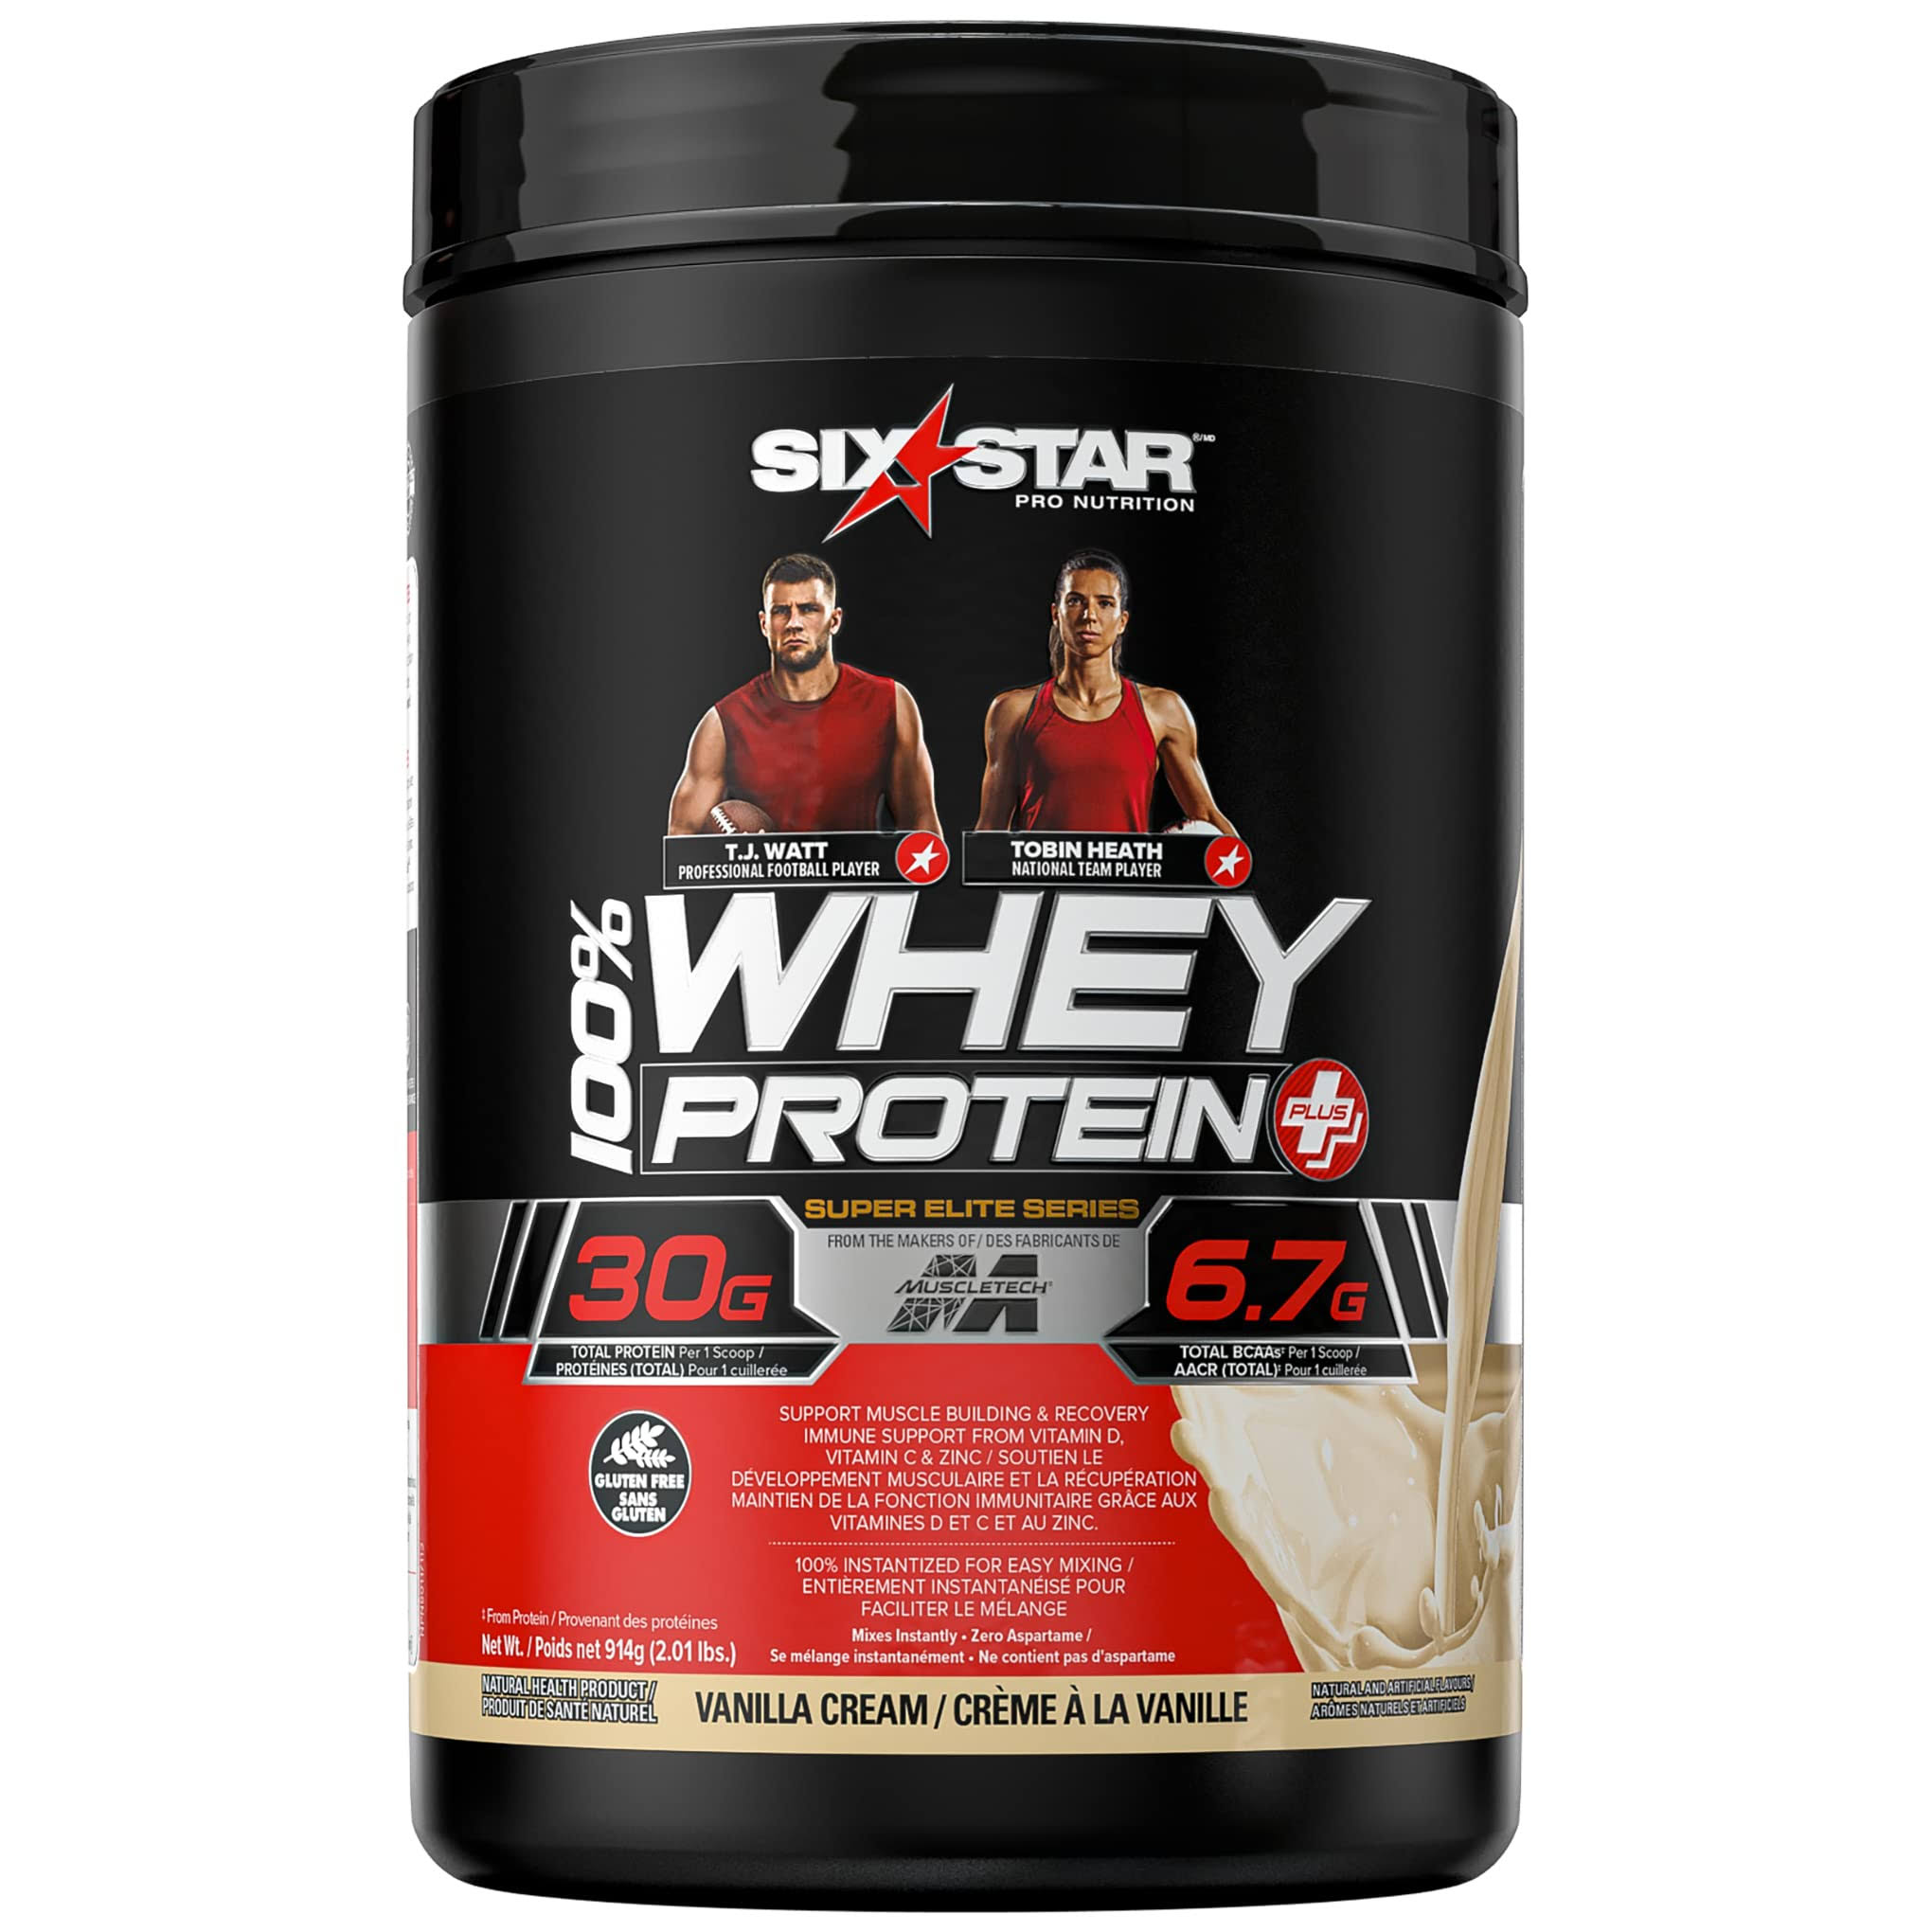 Six Star Pro Nutrition Elite Series Whey Protein Supplement - Vanilla Cream, 885g